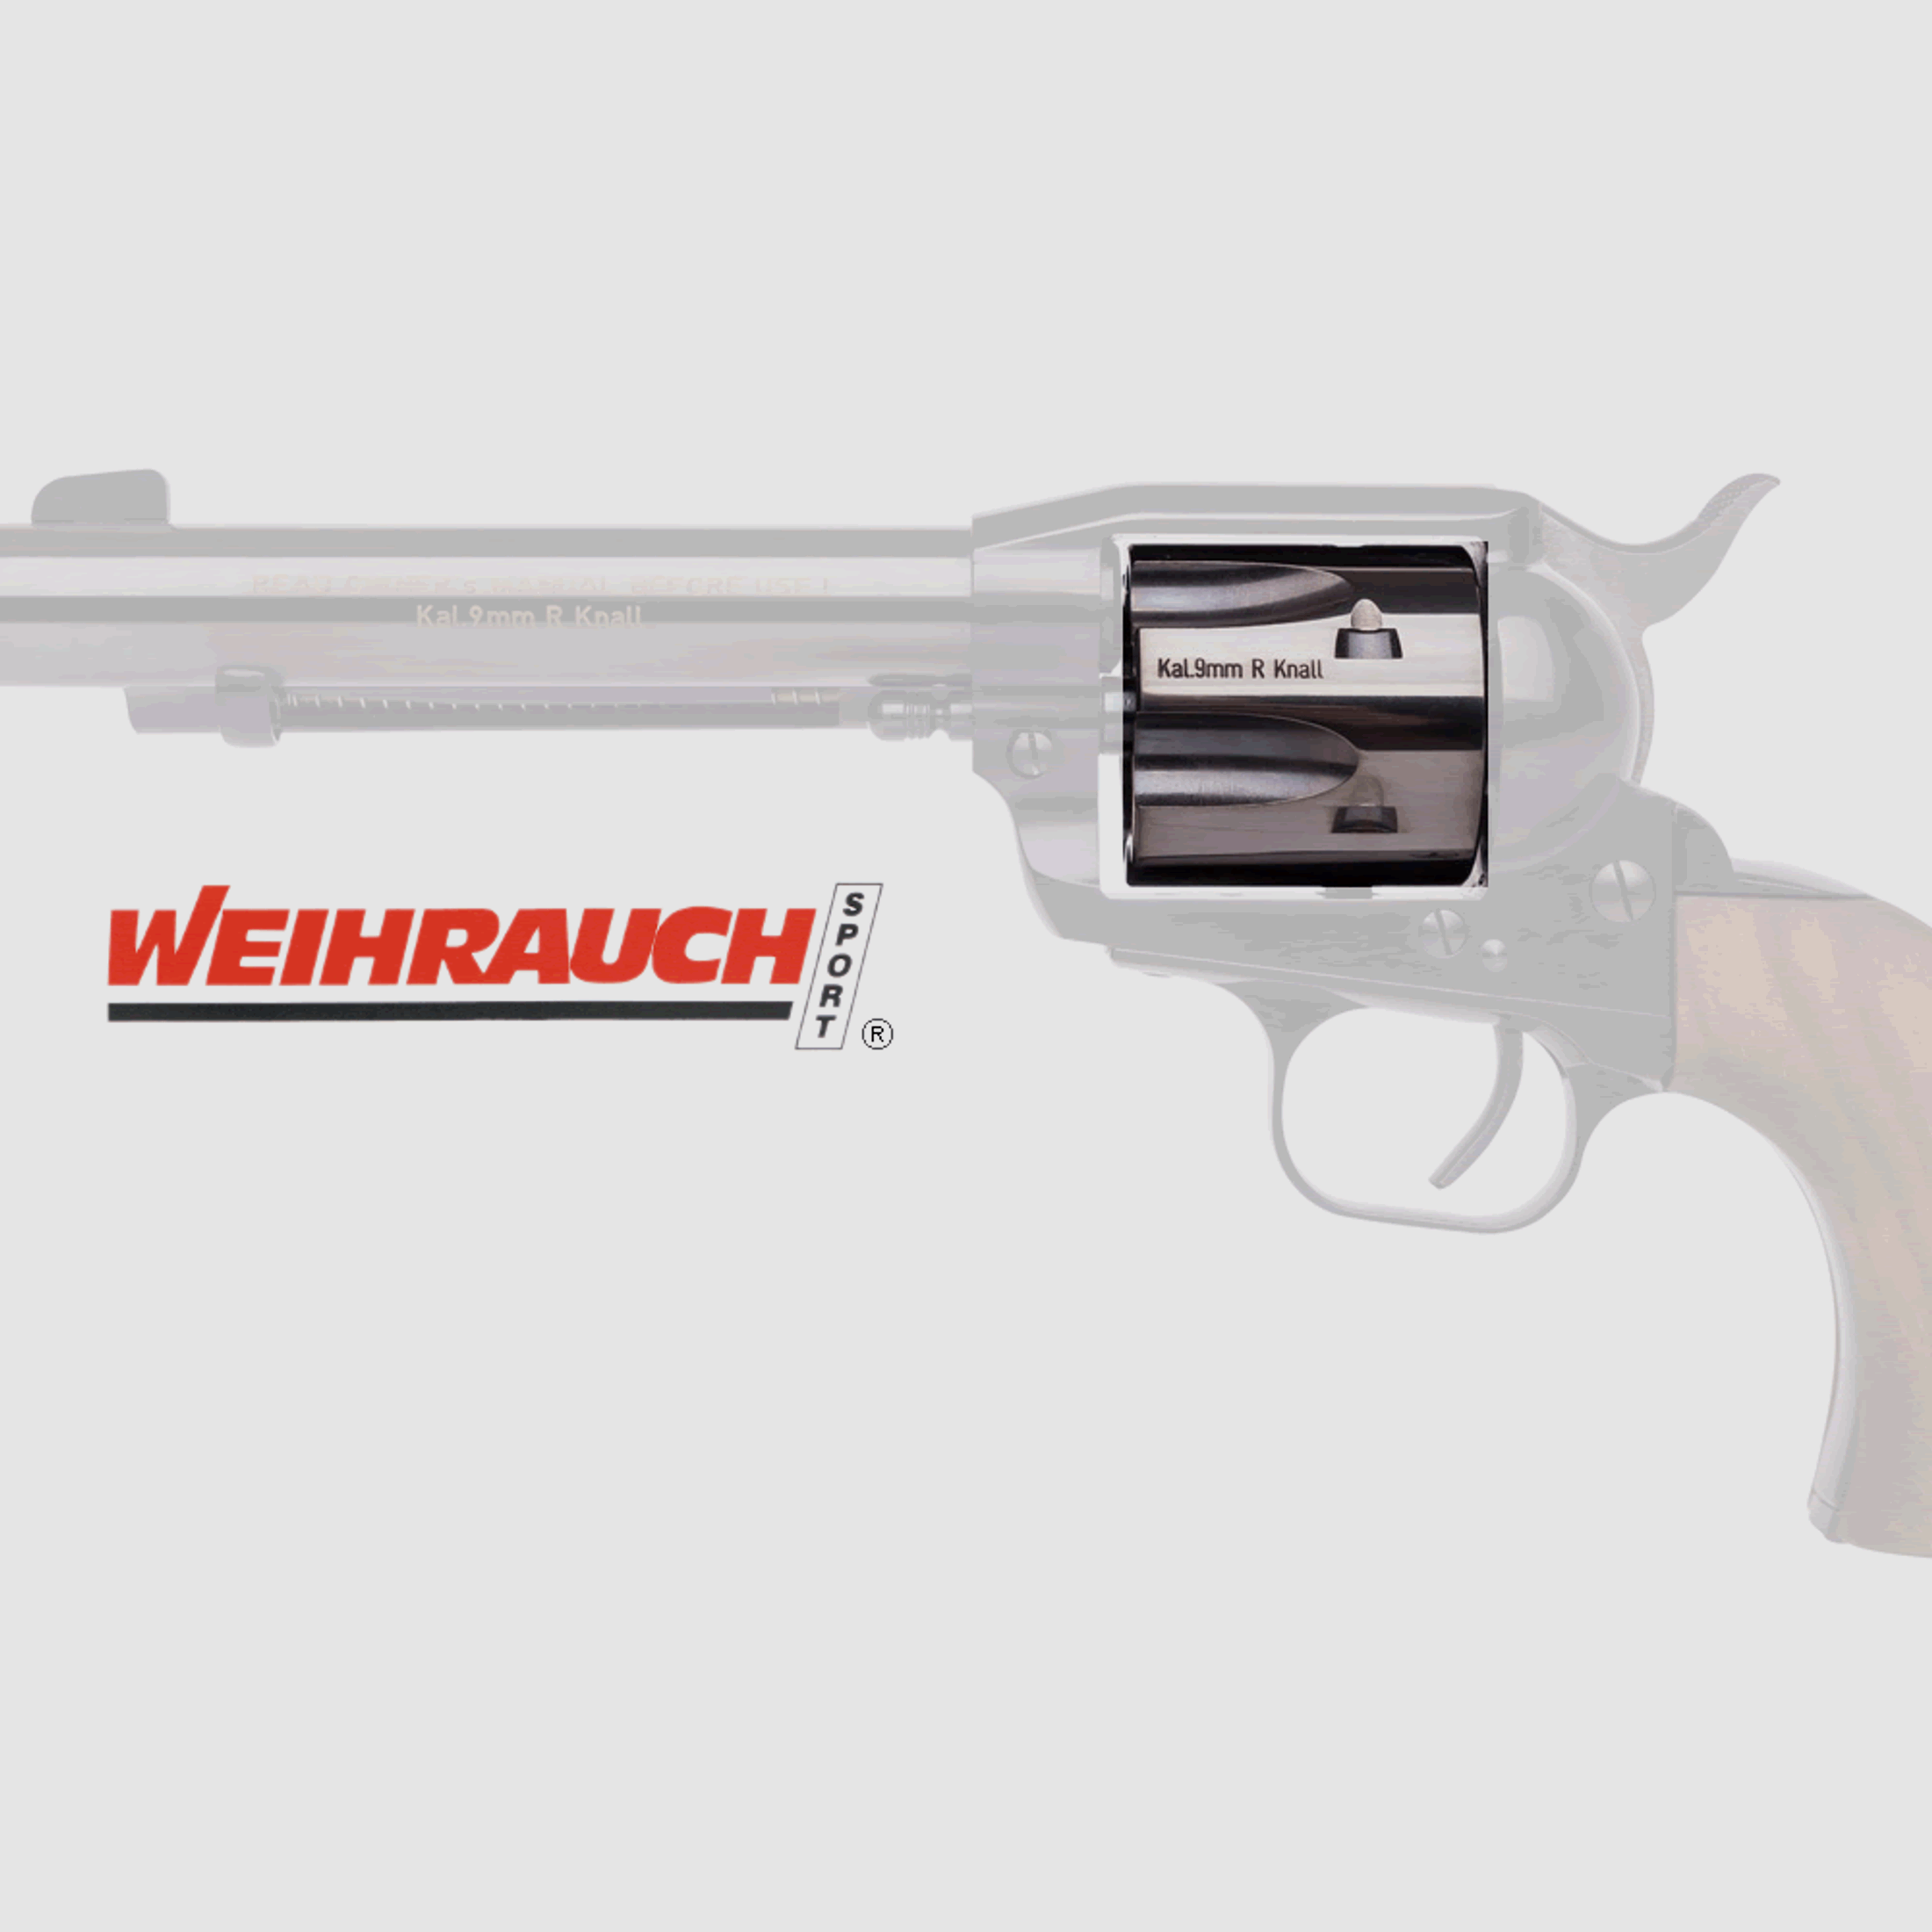 Trommel fĂĽr Gasrevolver Weihrauch Western Single Action Army Revolver